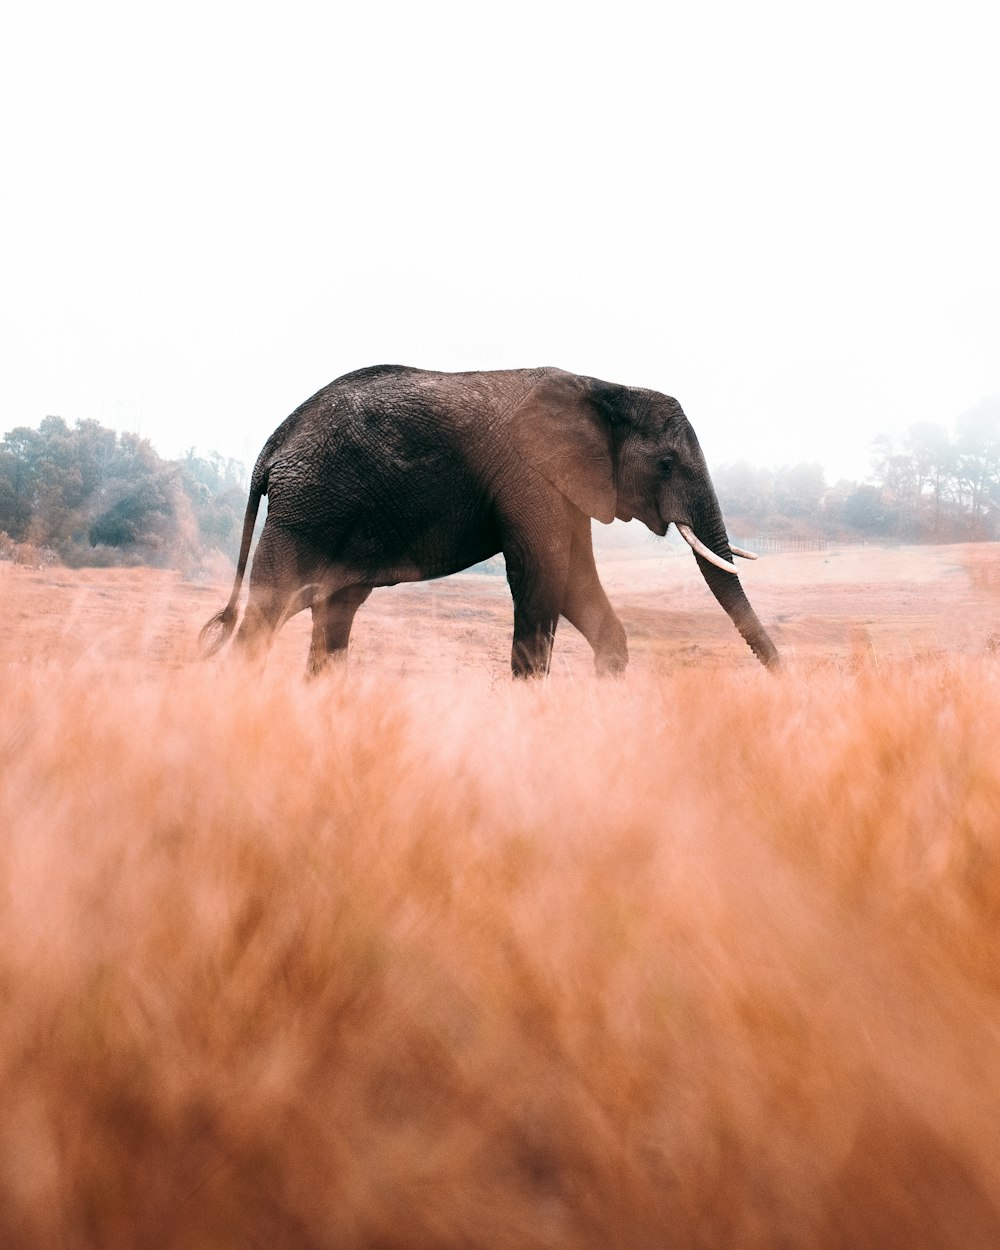 éléphant marchant sur un champ d’herbe brune pendant la journée